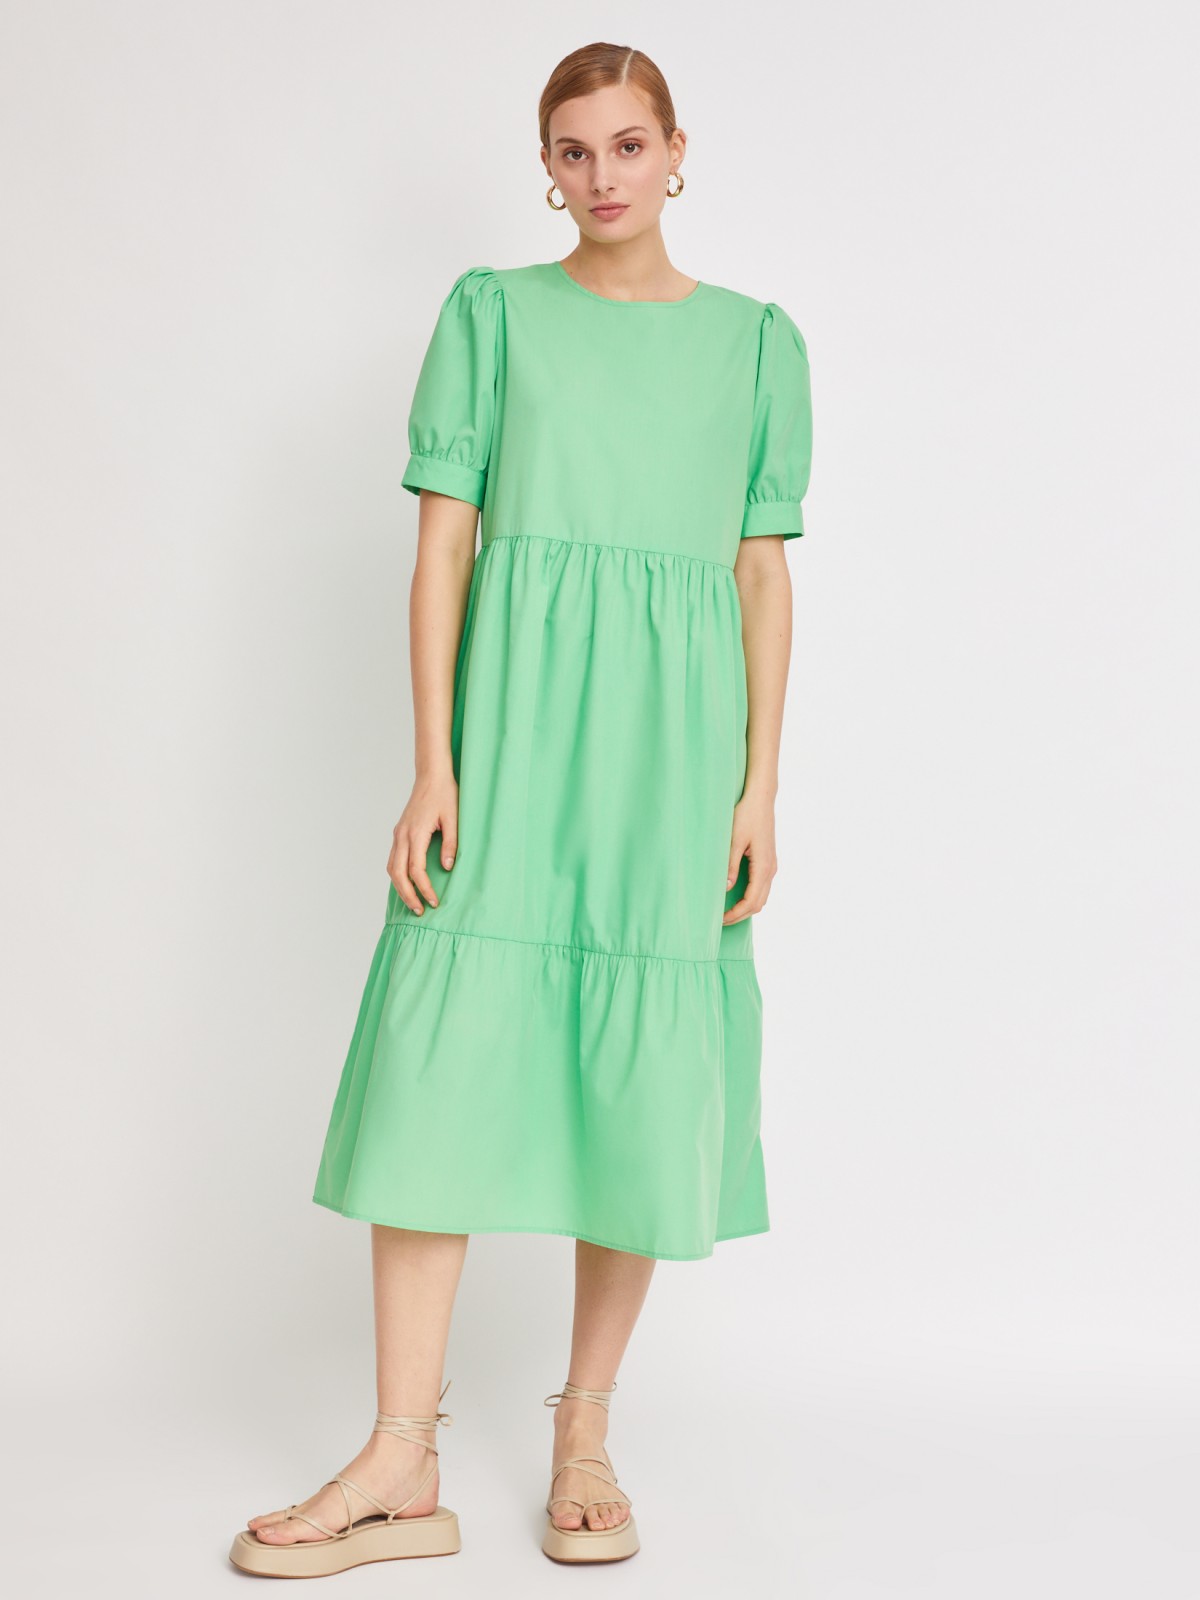 Ярусное платье длины миди zolla 223228259053, цвет светло-зеленый, размер XS - фото 2